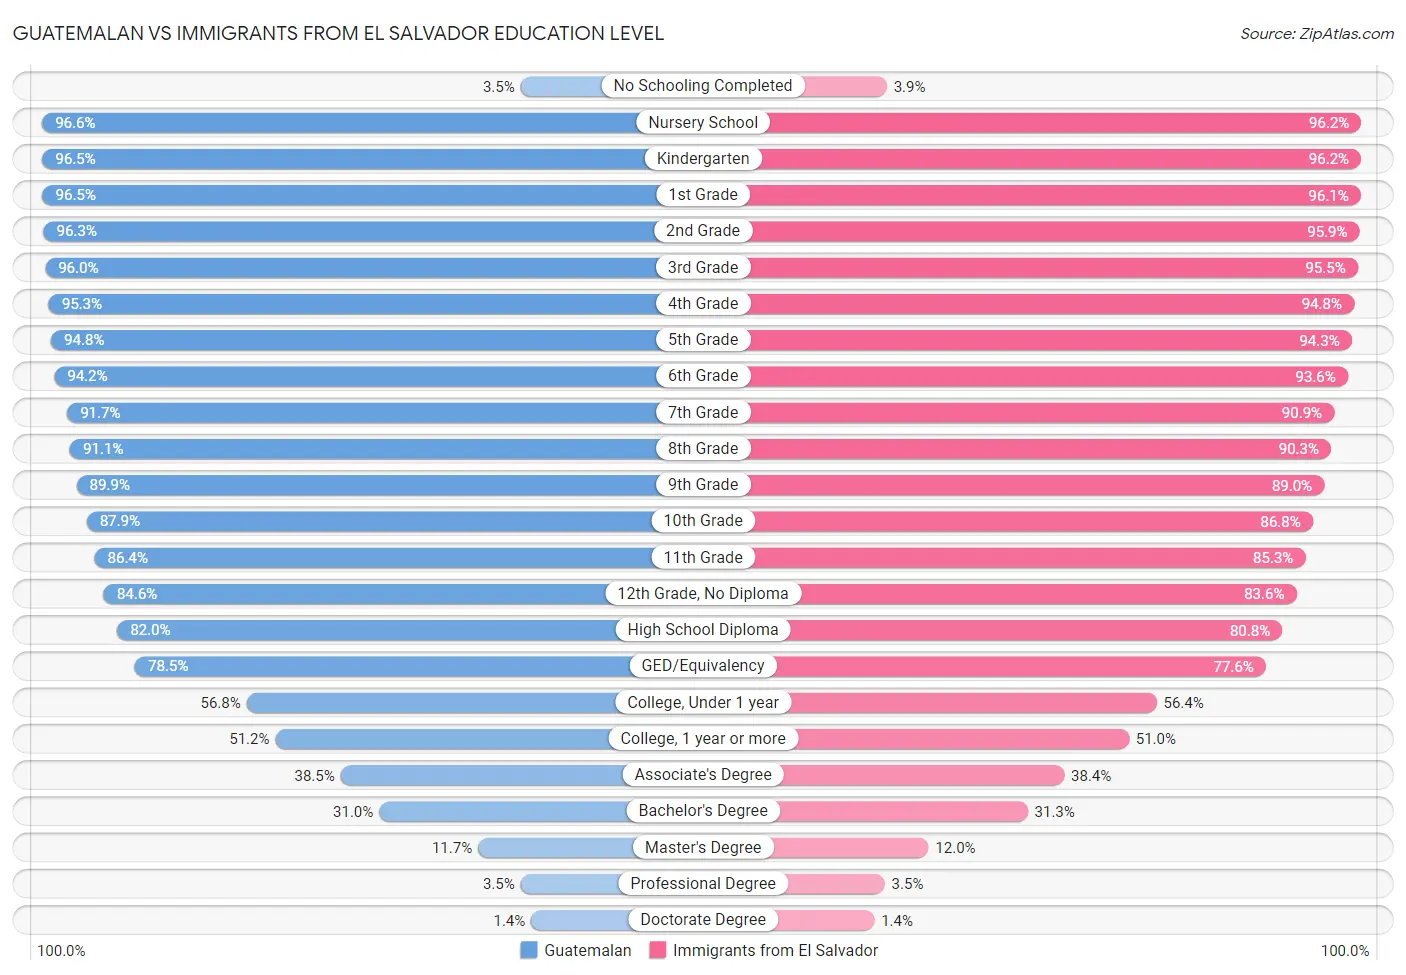 Guatemalan vs Immigrants from El Salvador Education Level